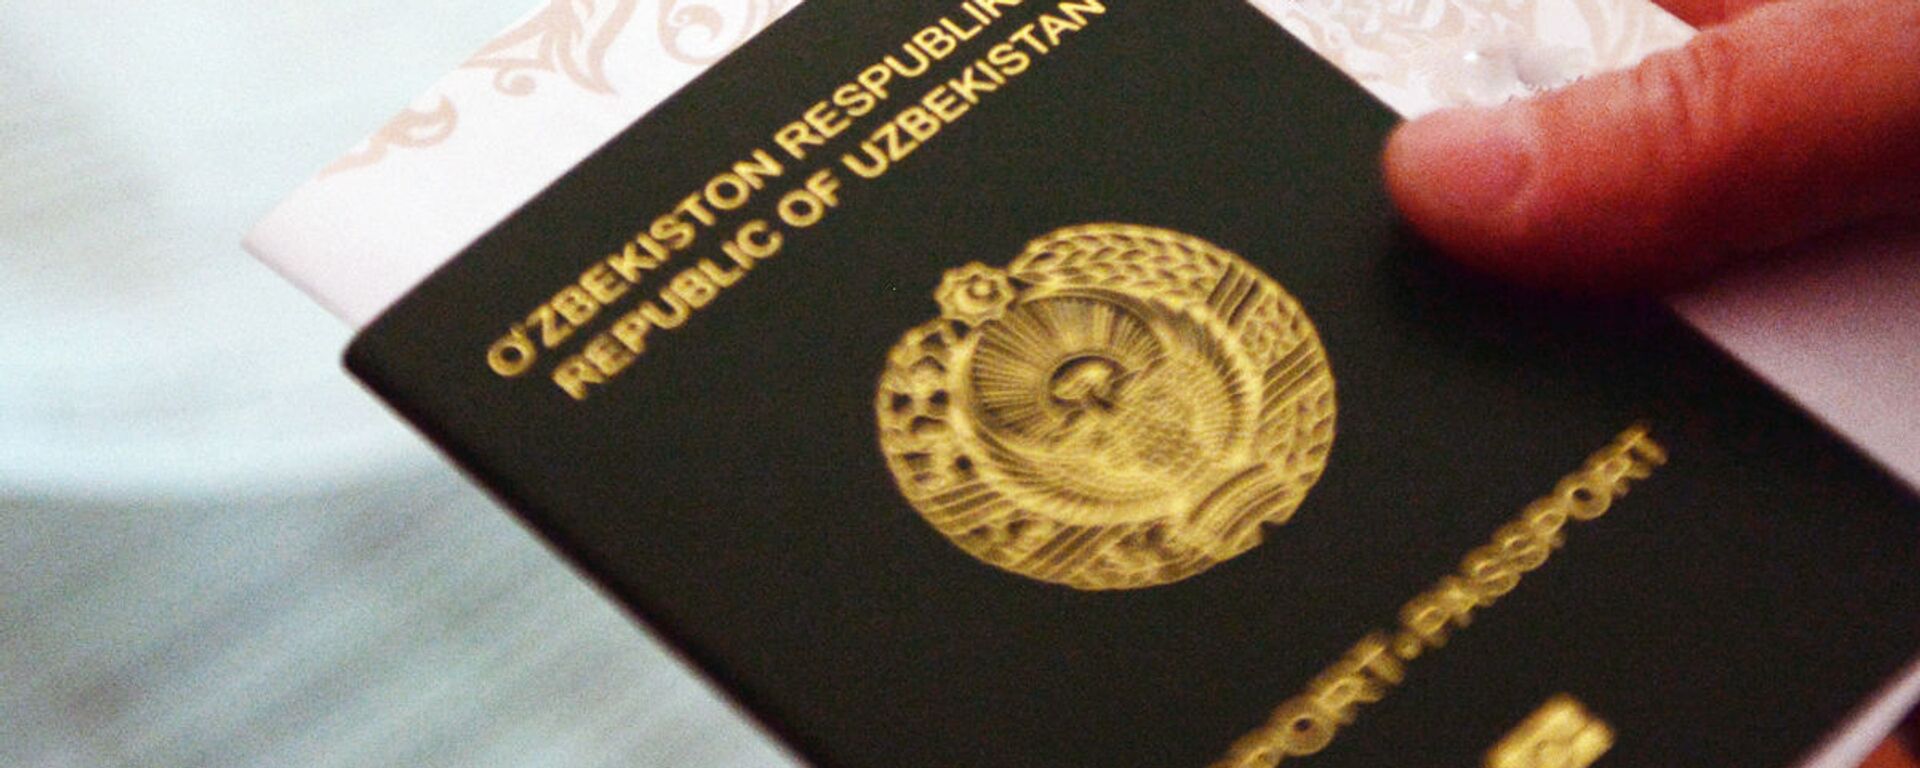 Паспорт гражданина Узбекистана - Sputnik Ўзбекистон, 1920, 29.12.2020